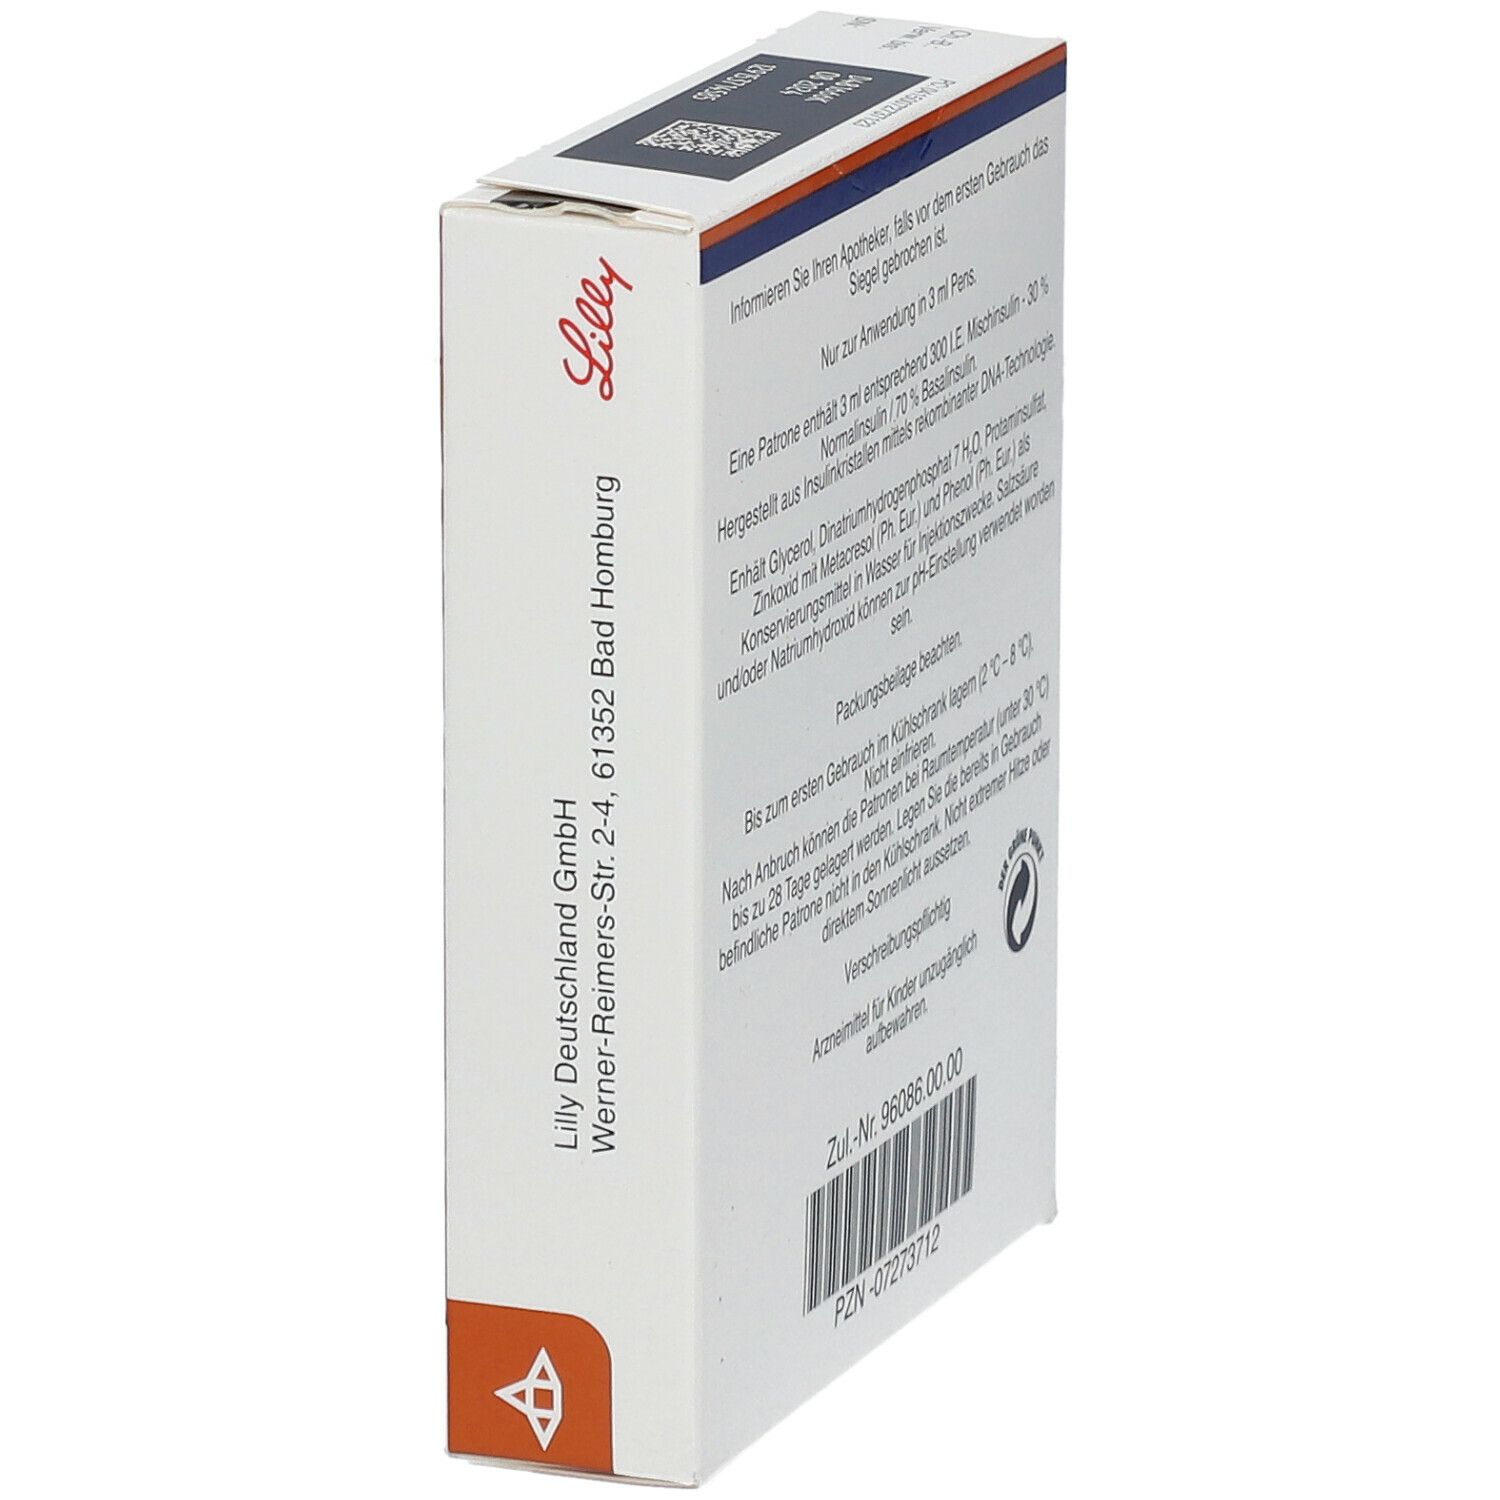 Huminsulin® Profil III für Pen 3 ml